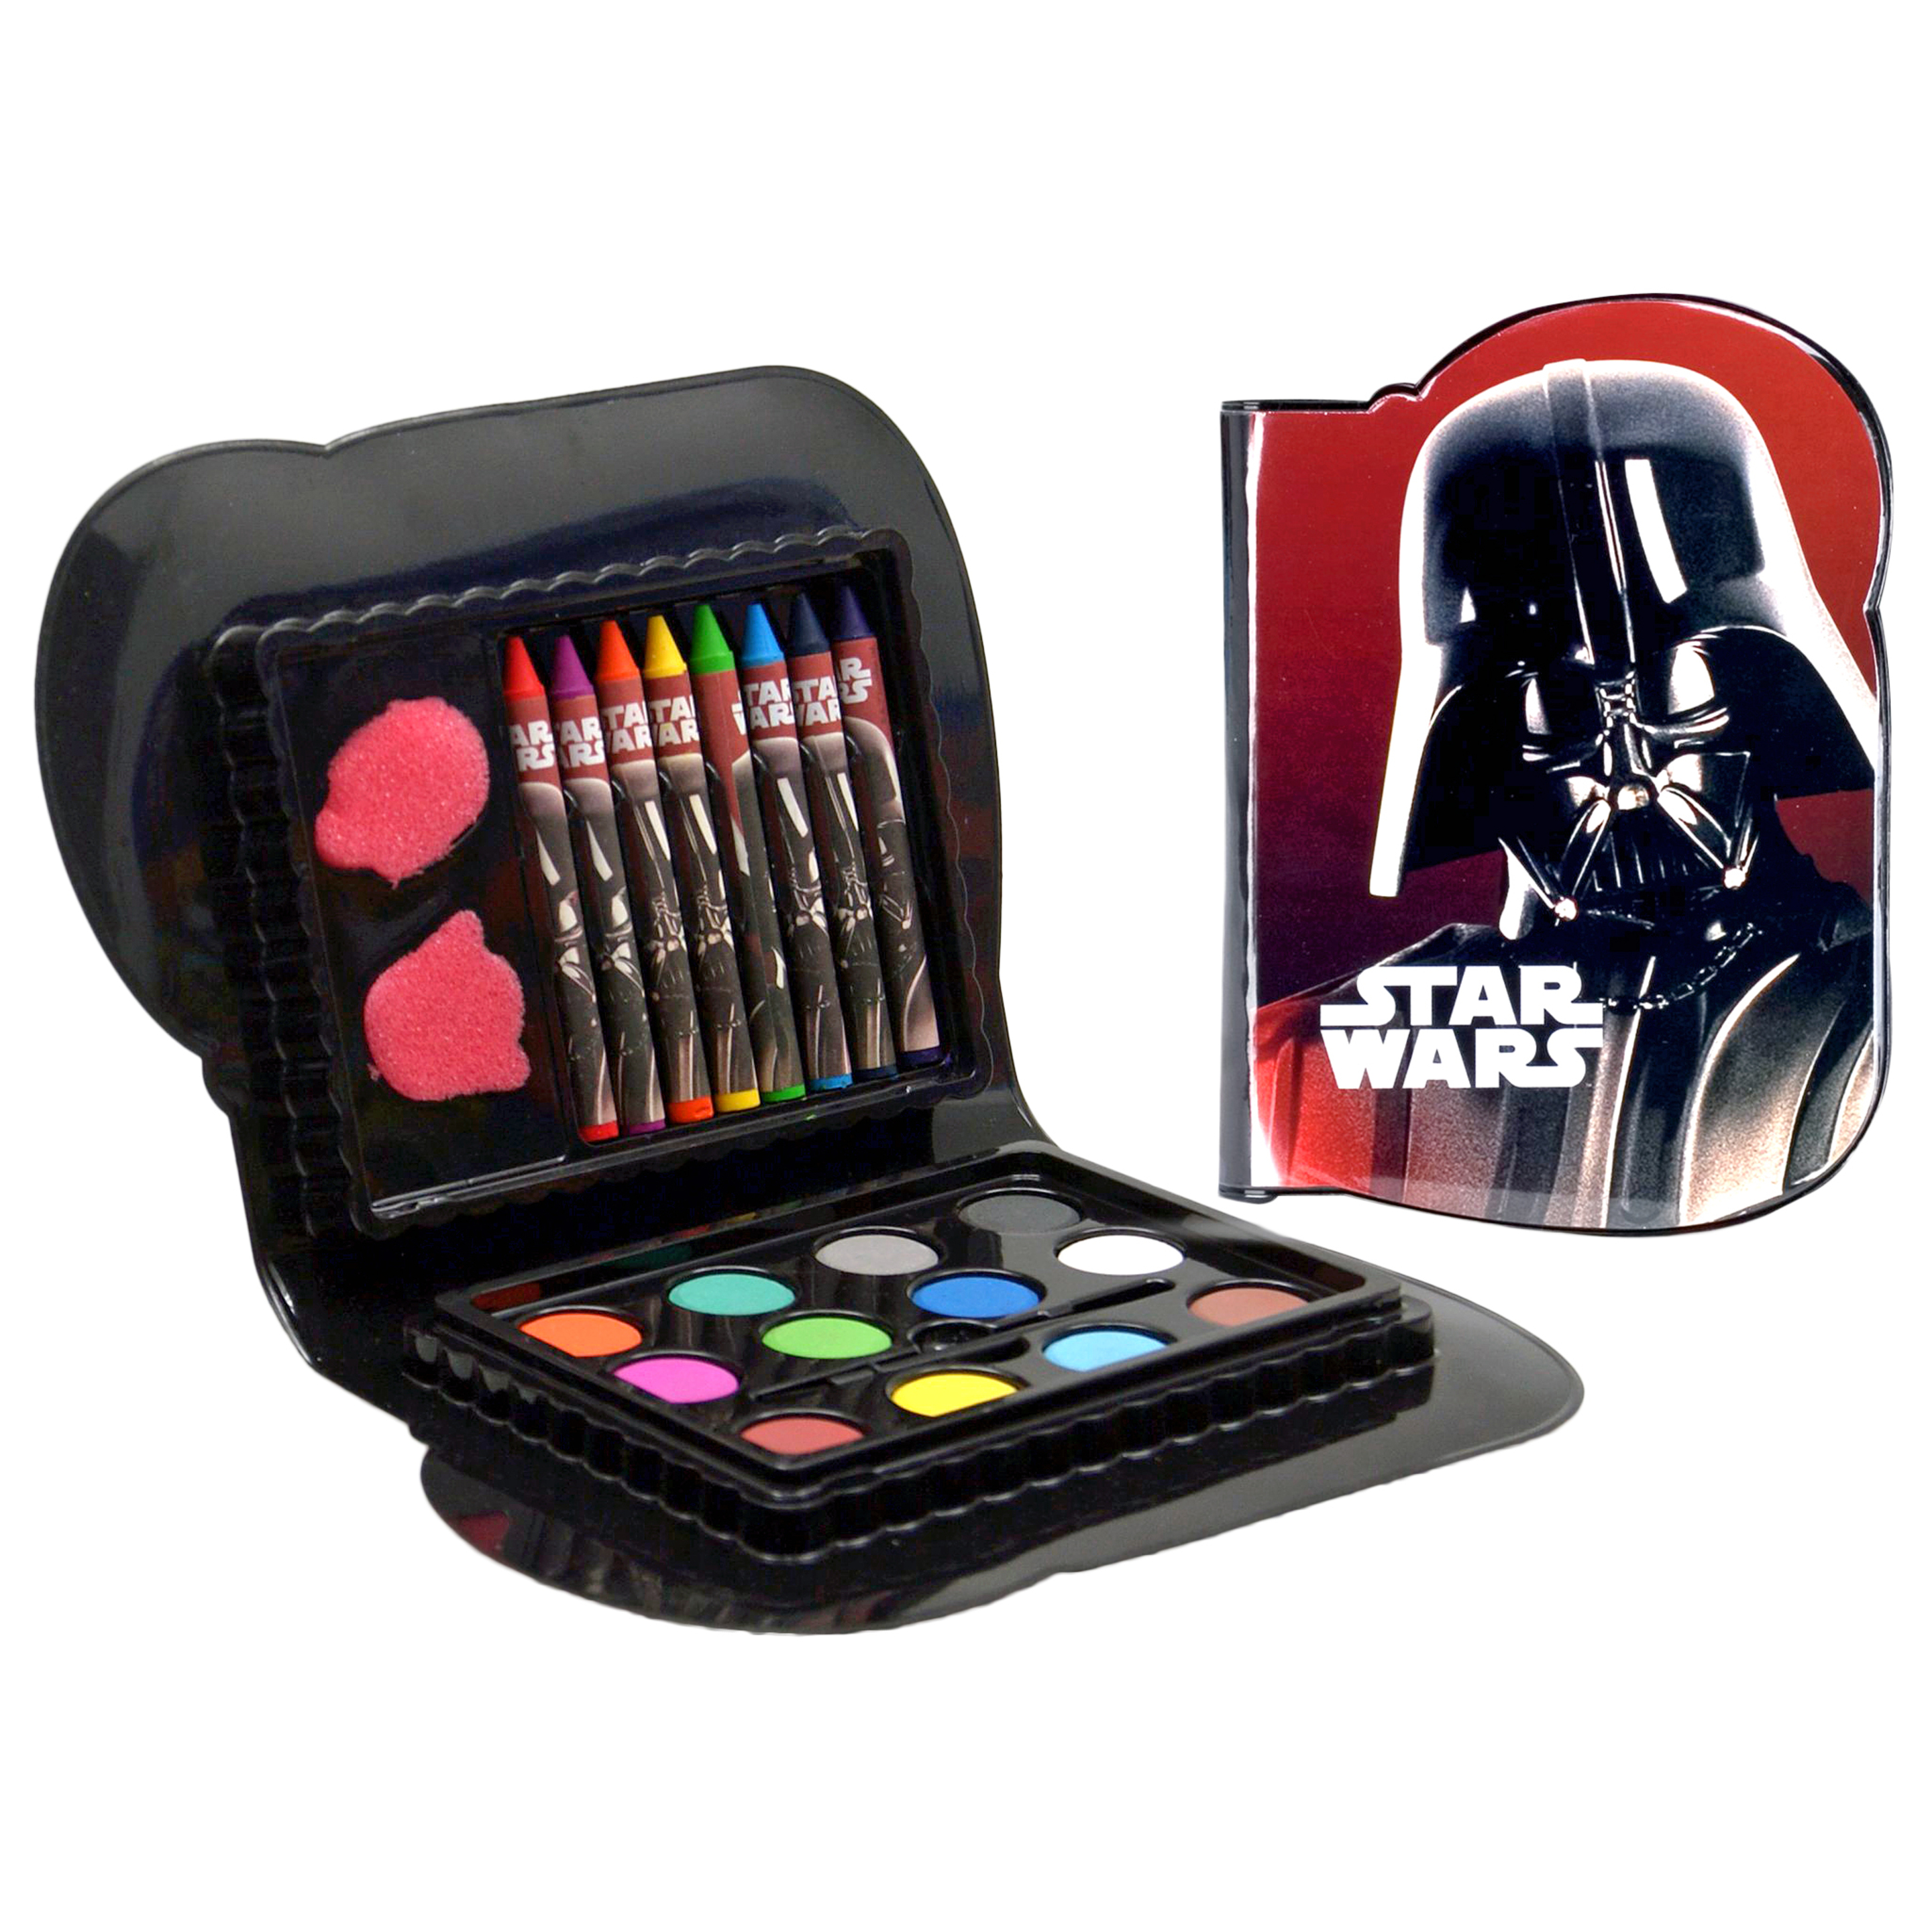 Estuche Pequeño Star Wars Con Pinturas - Multicolor  MKP